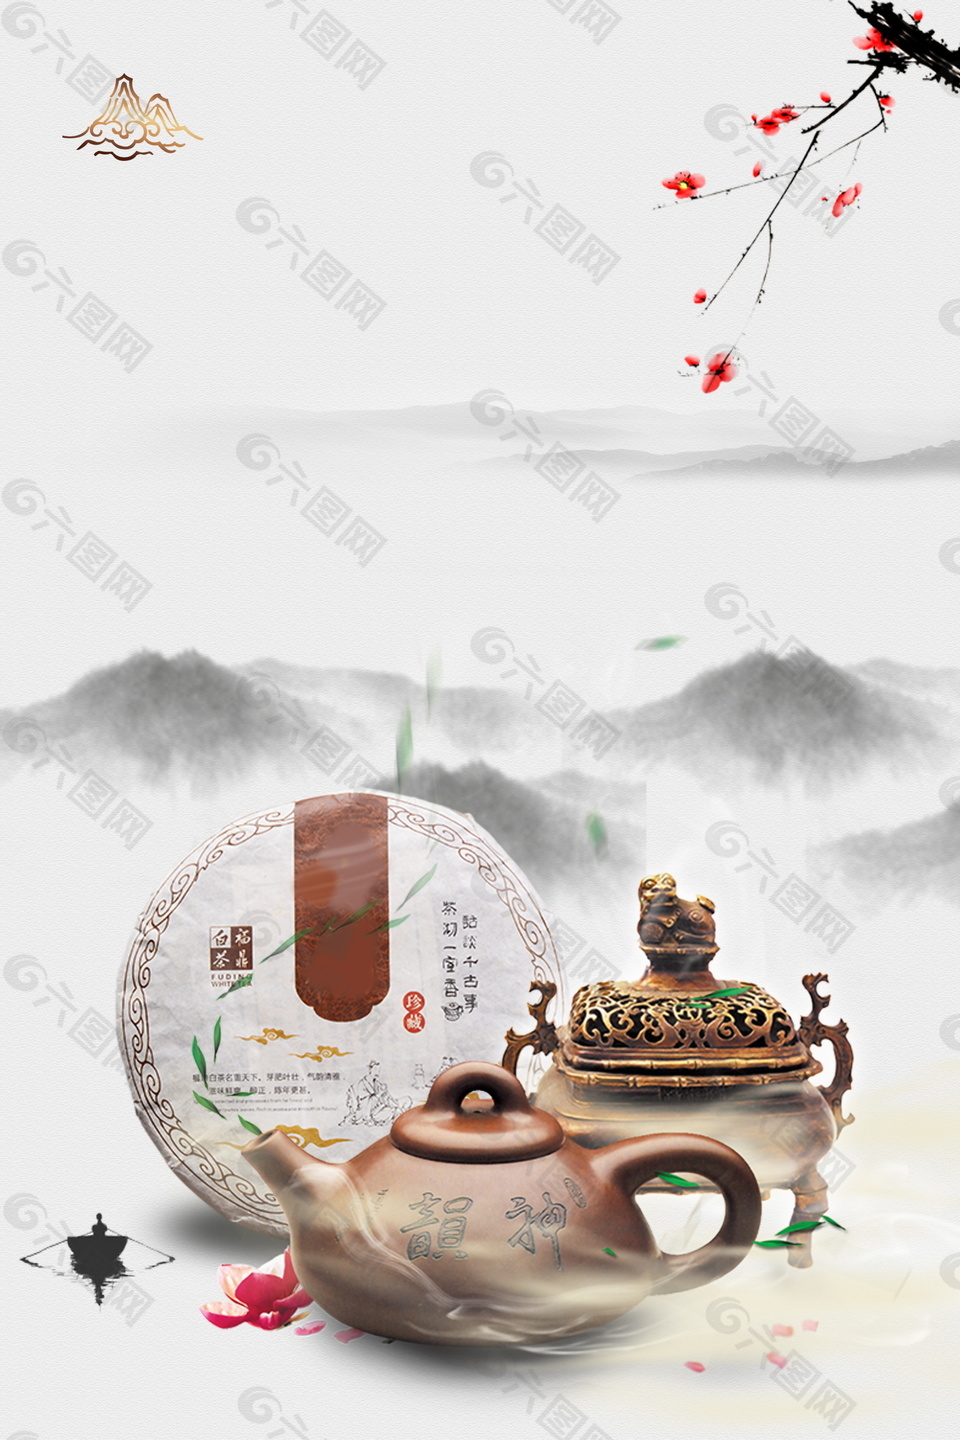 中國風遠山花枝祁門紅茶廣告背景素材